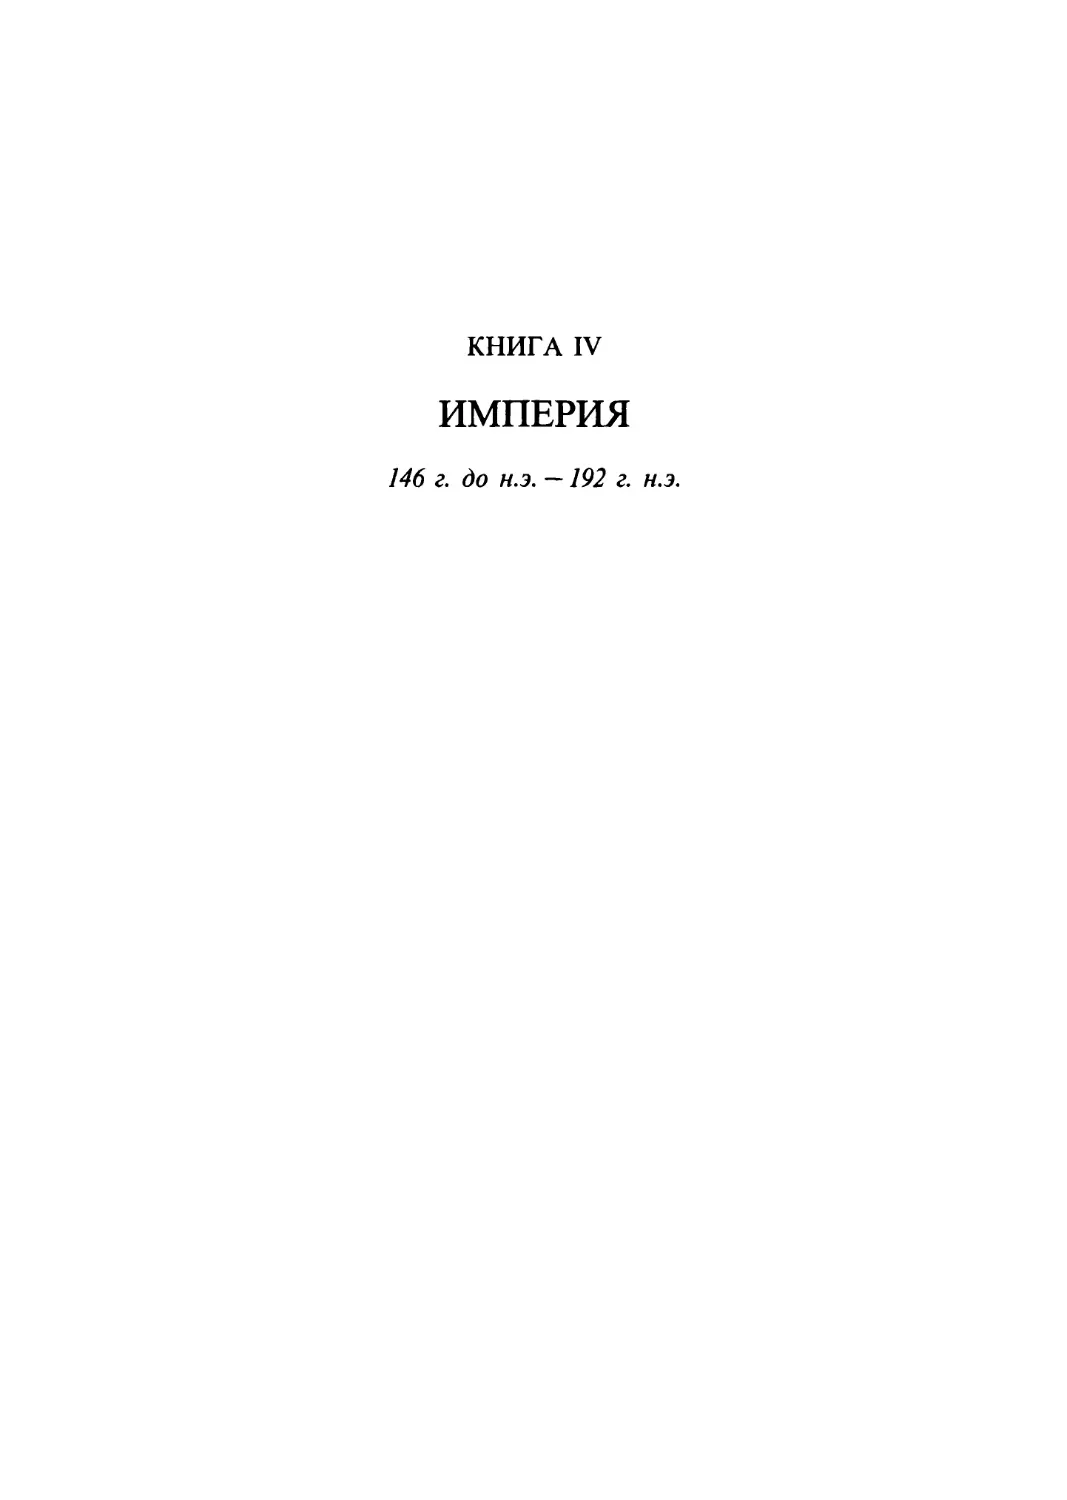 Книга IV. Империя: 146 г. до н.э. - 192 г. н.э.